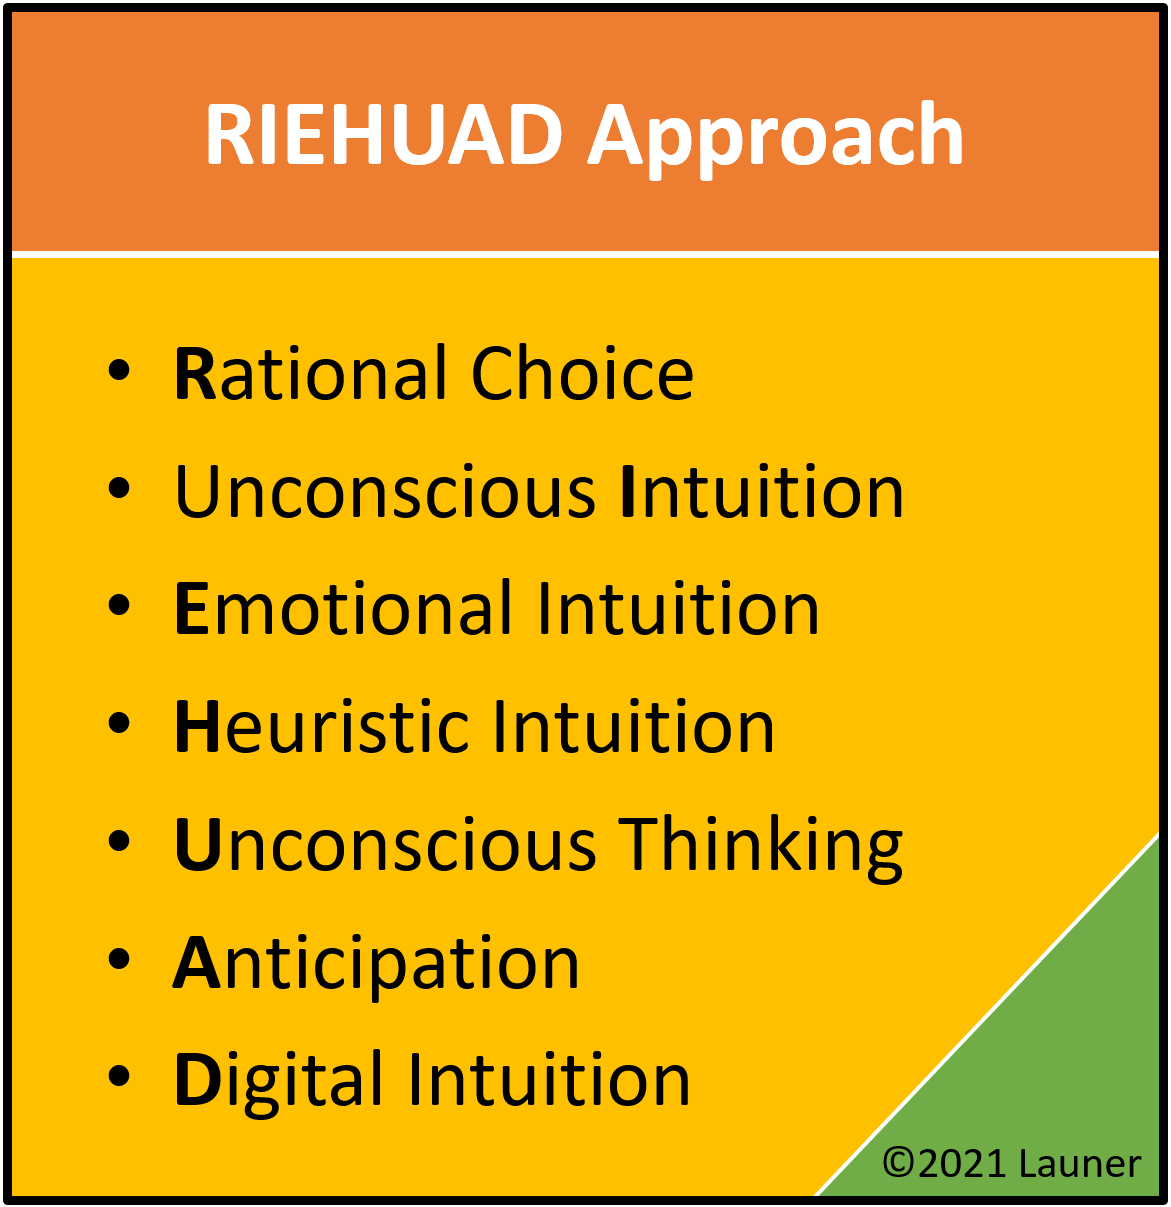 RIEHUAD Approach